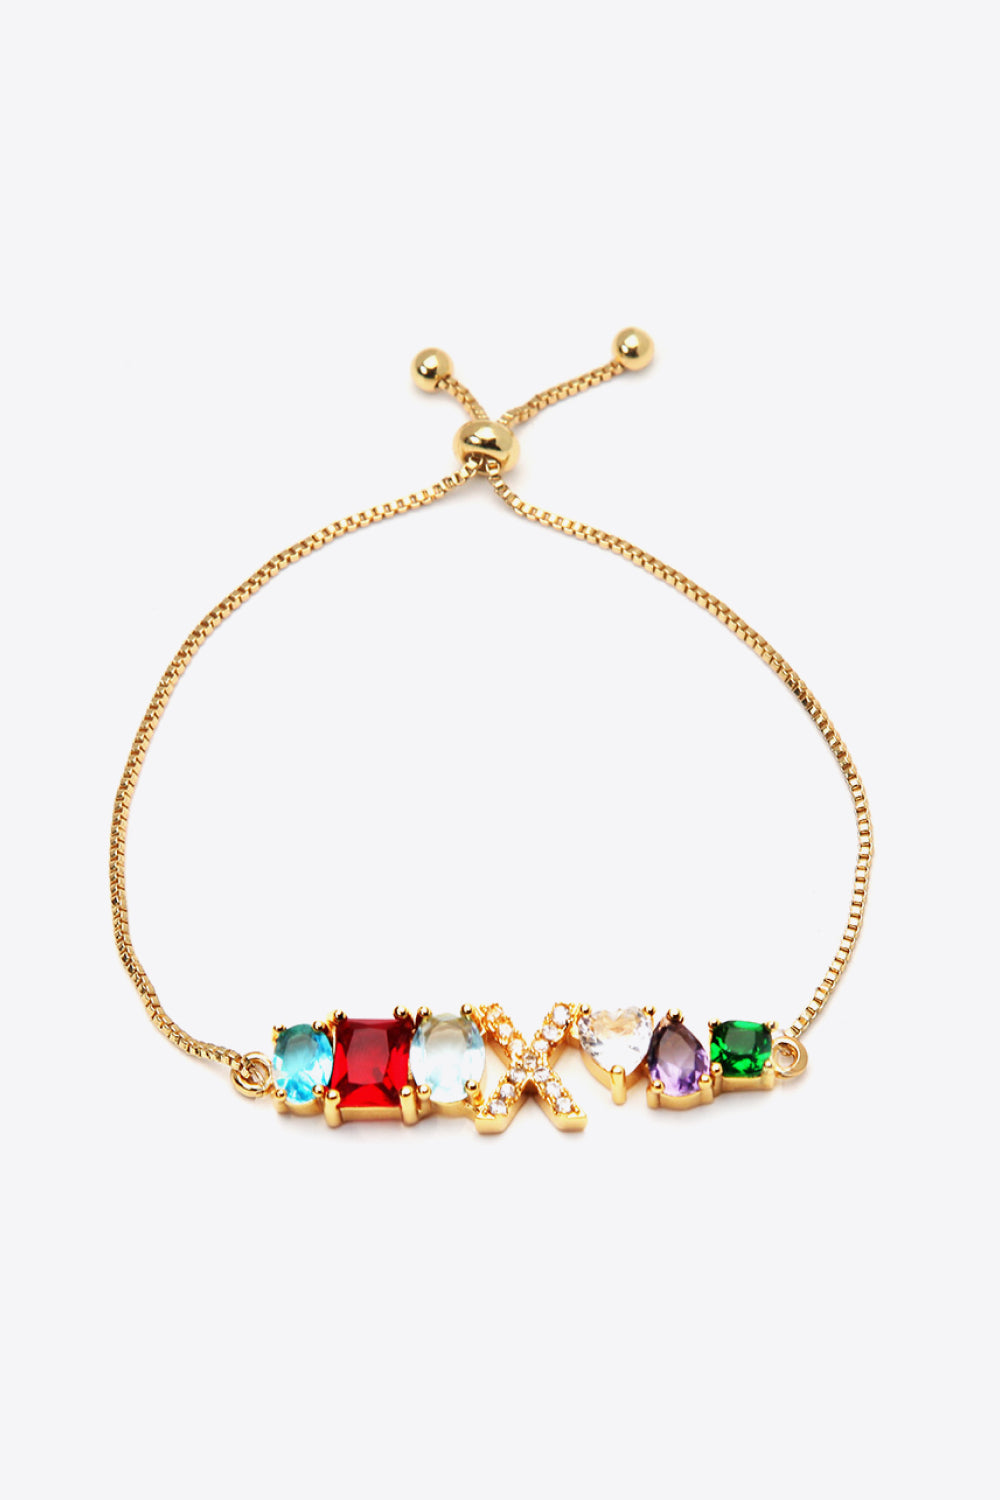 U to Z Zircon Bracelet - X / One Size - Women’s Jewelry - Bracelets - 10 - 2024